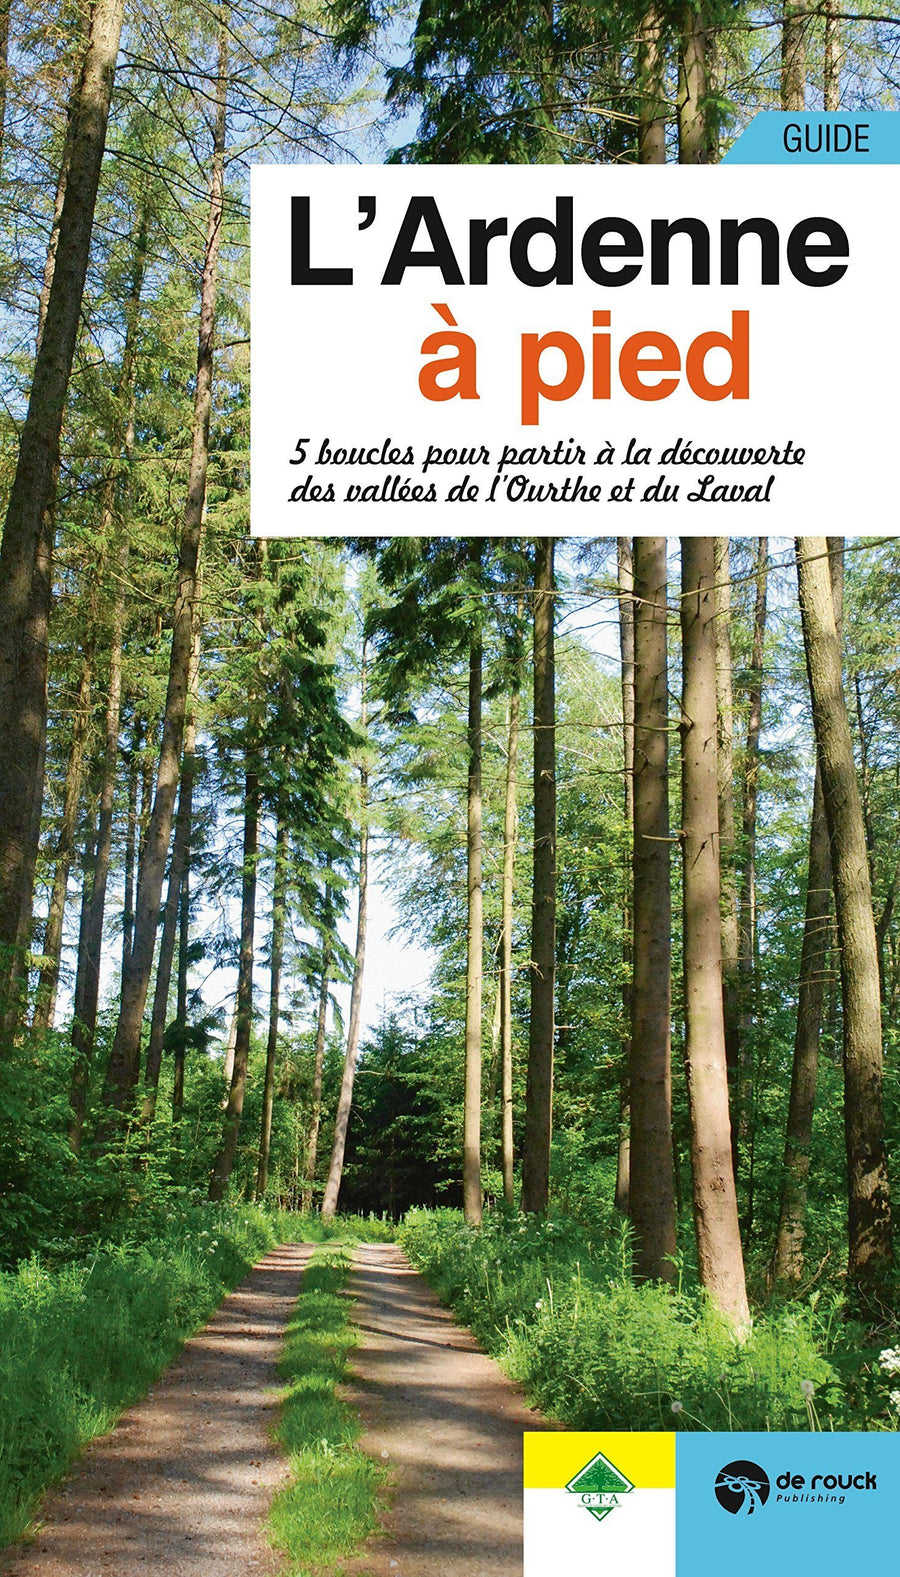 Guide de randonnée - L'Ardenne à pied guide de randonnée De Rouck Publishing 